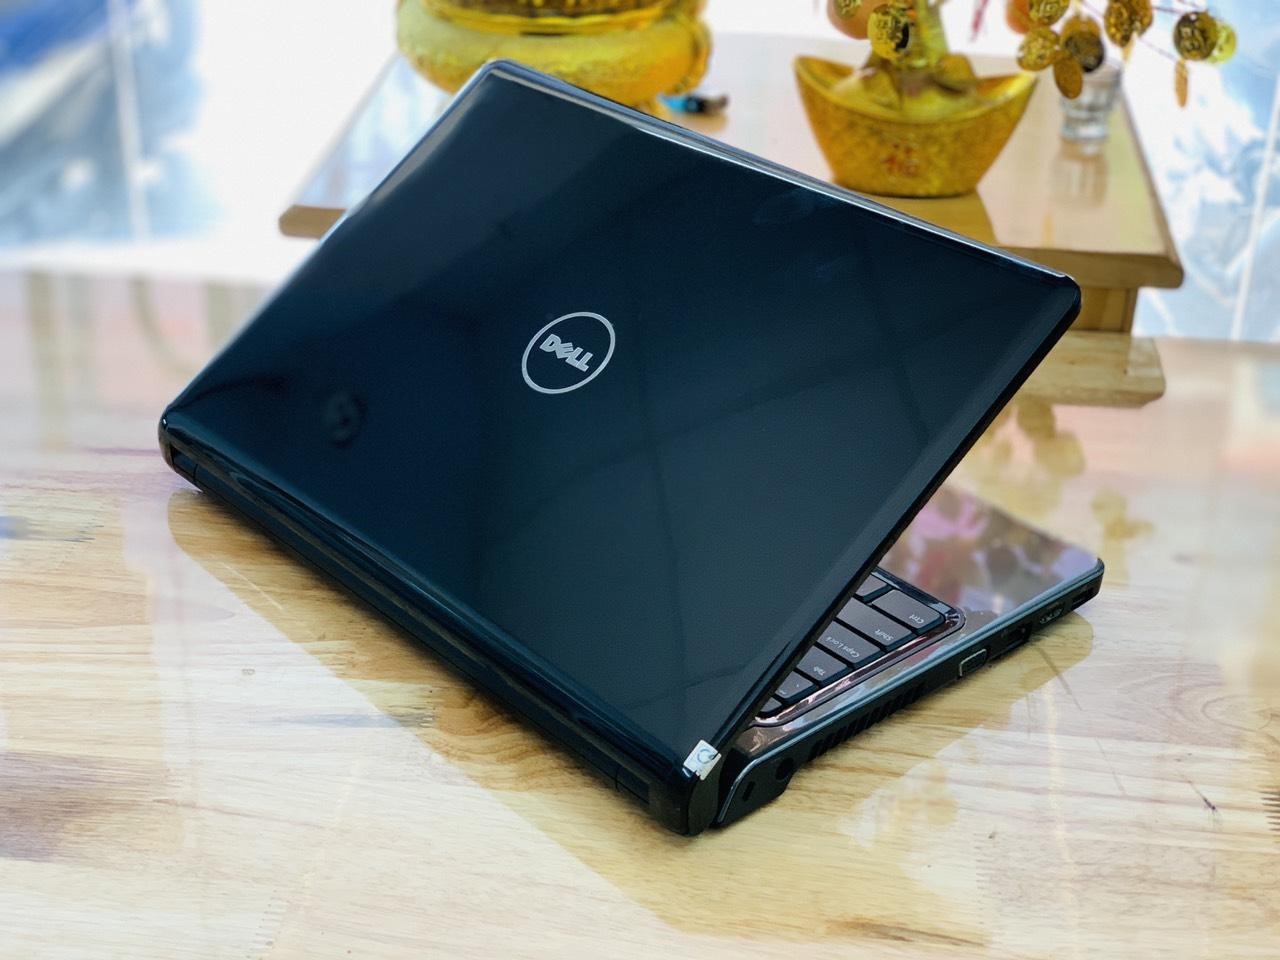 Sửa pin laptop Dell nên chọn đơn vị nào? Tư vấn lựa chọn